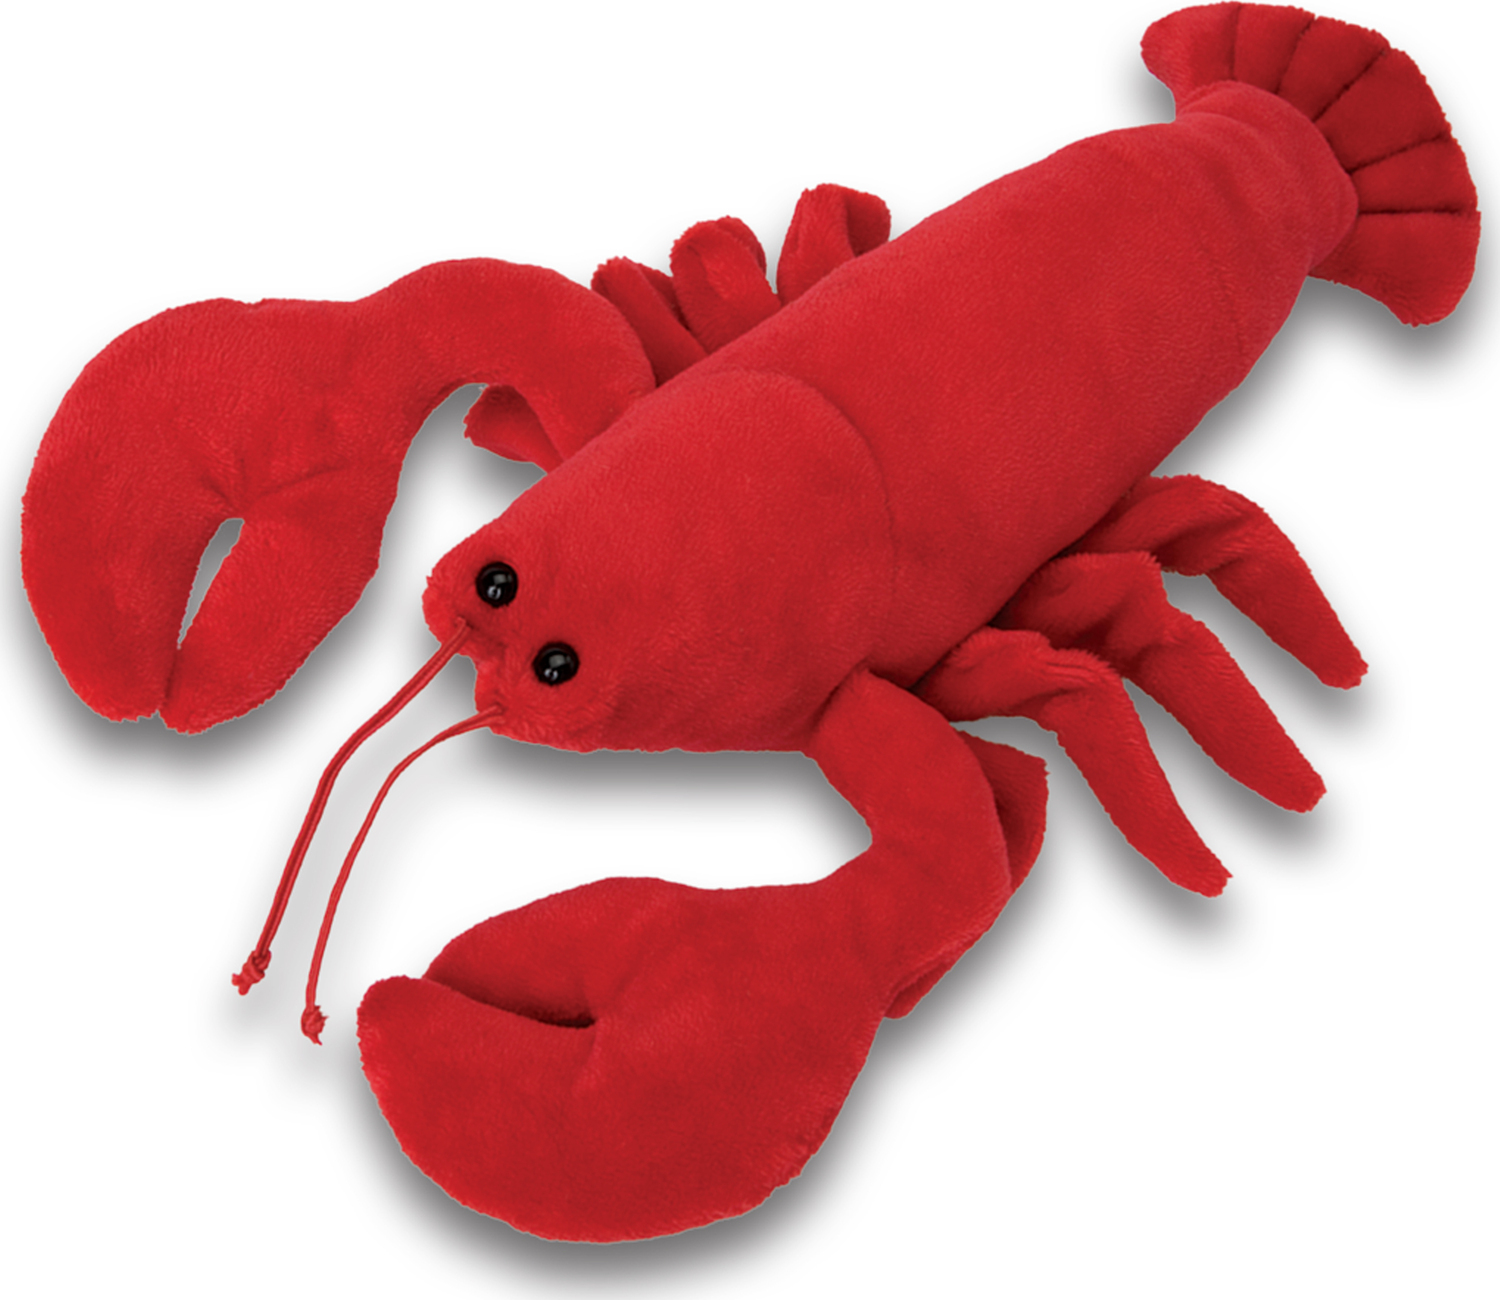 Snapper Lobster Franklin S Toys